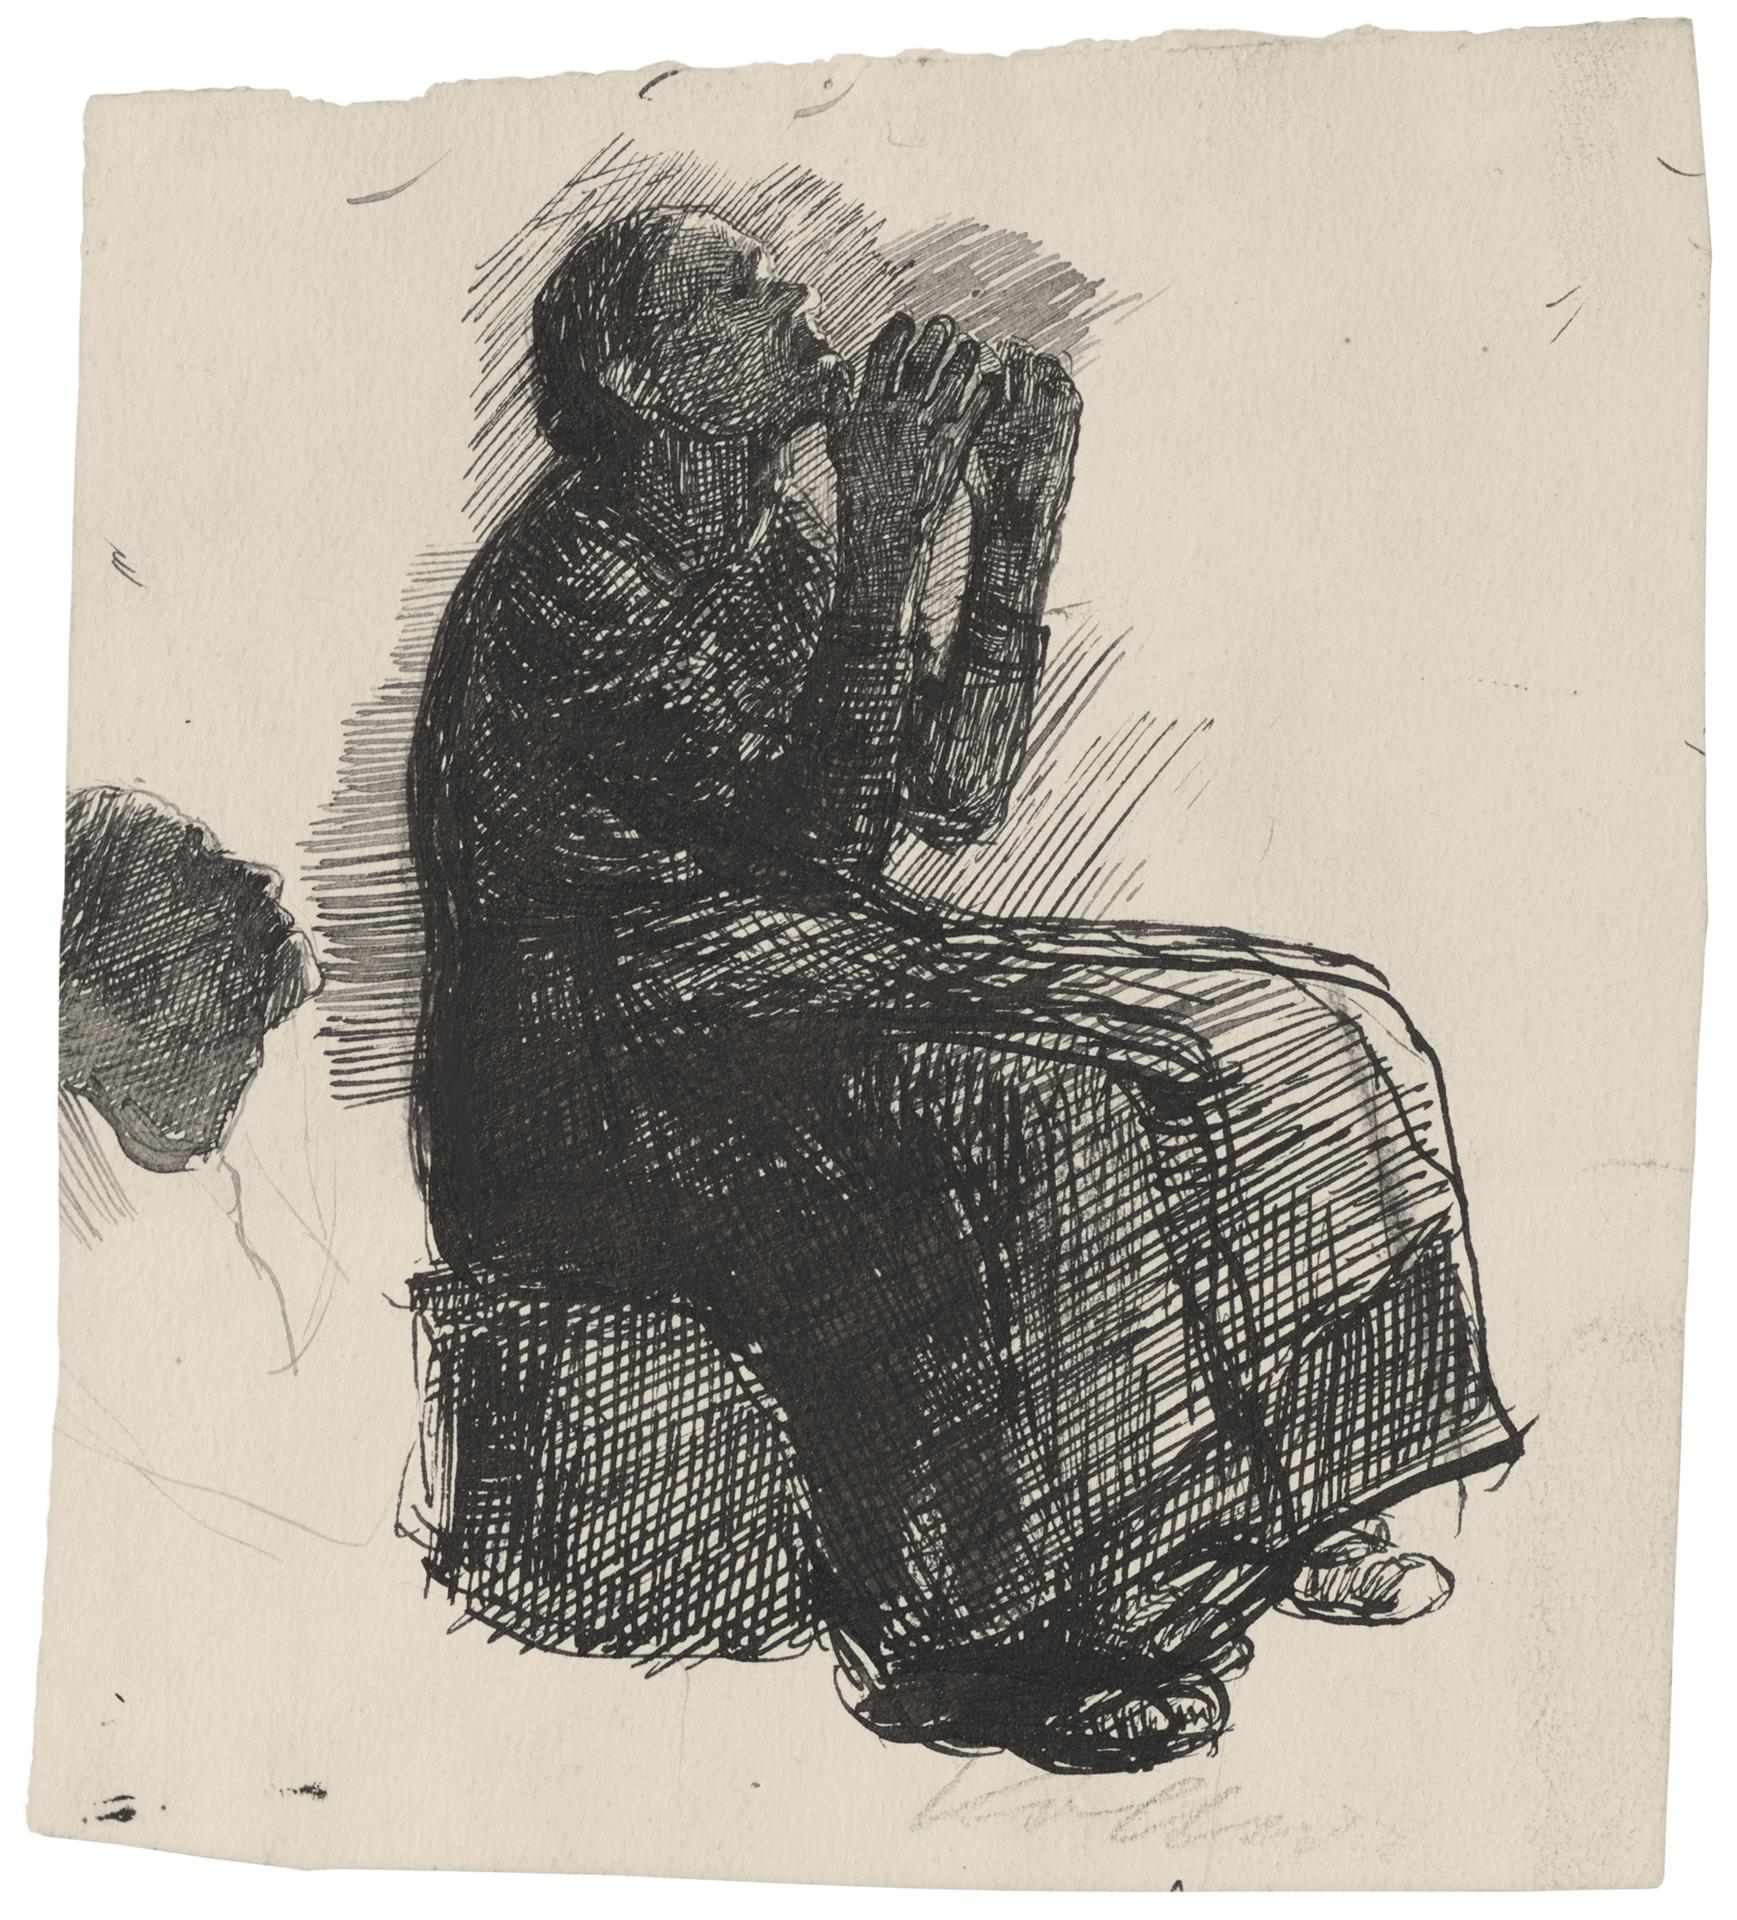 Käthe Kollwitz, Femme assise se lamentant les bras levés, étude détaillée pour la première version de la lithographie Misère, 1895, plume et encre noire, NT 116, Collection Kollwitz de Cologne © Käthe Kollwitz Museum Köln